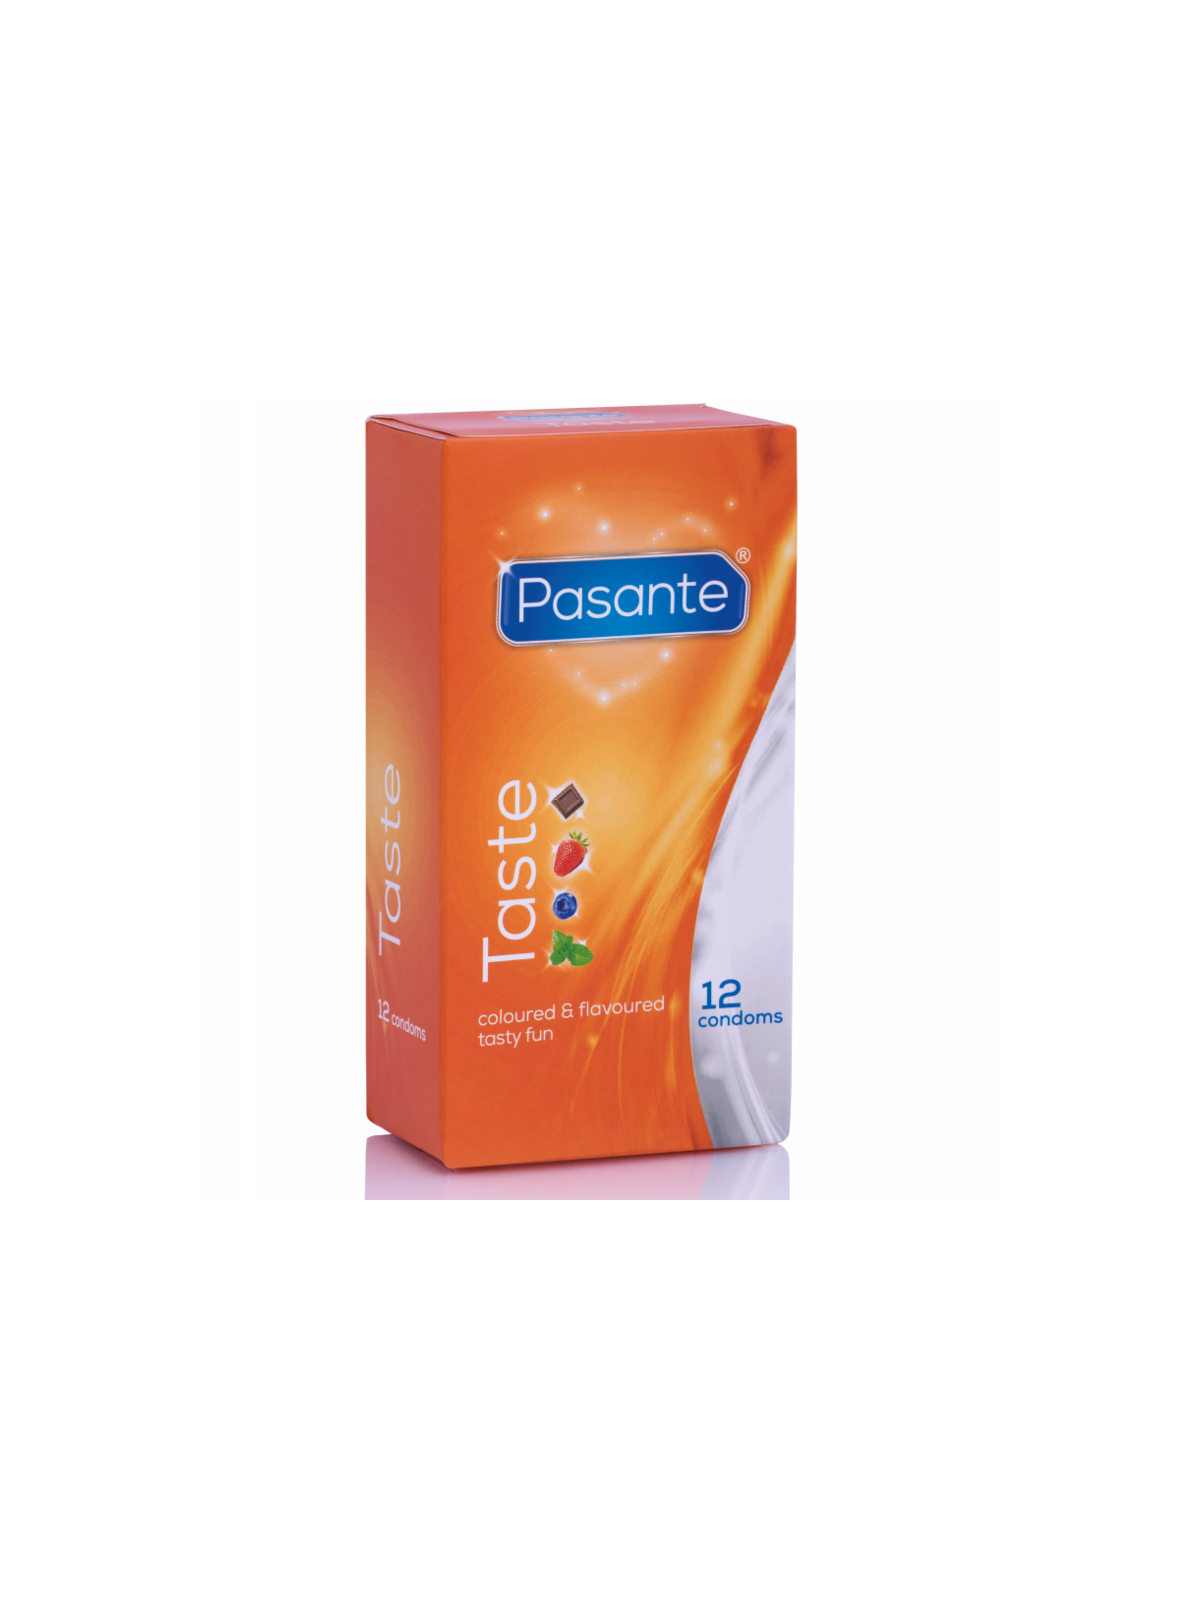 Pasante Preservativos Sabores - Comprar Condones de sabor Pasante - Preservativos de sabores (1)